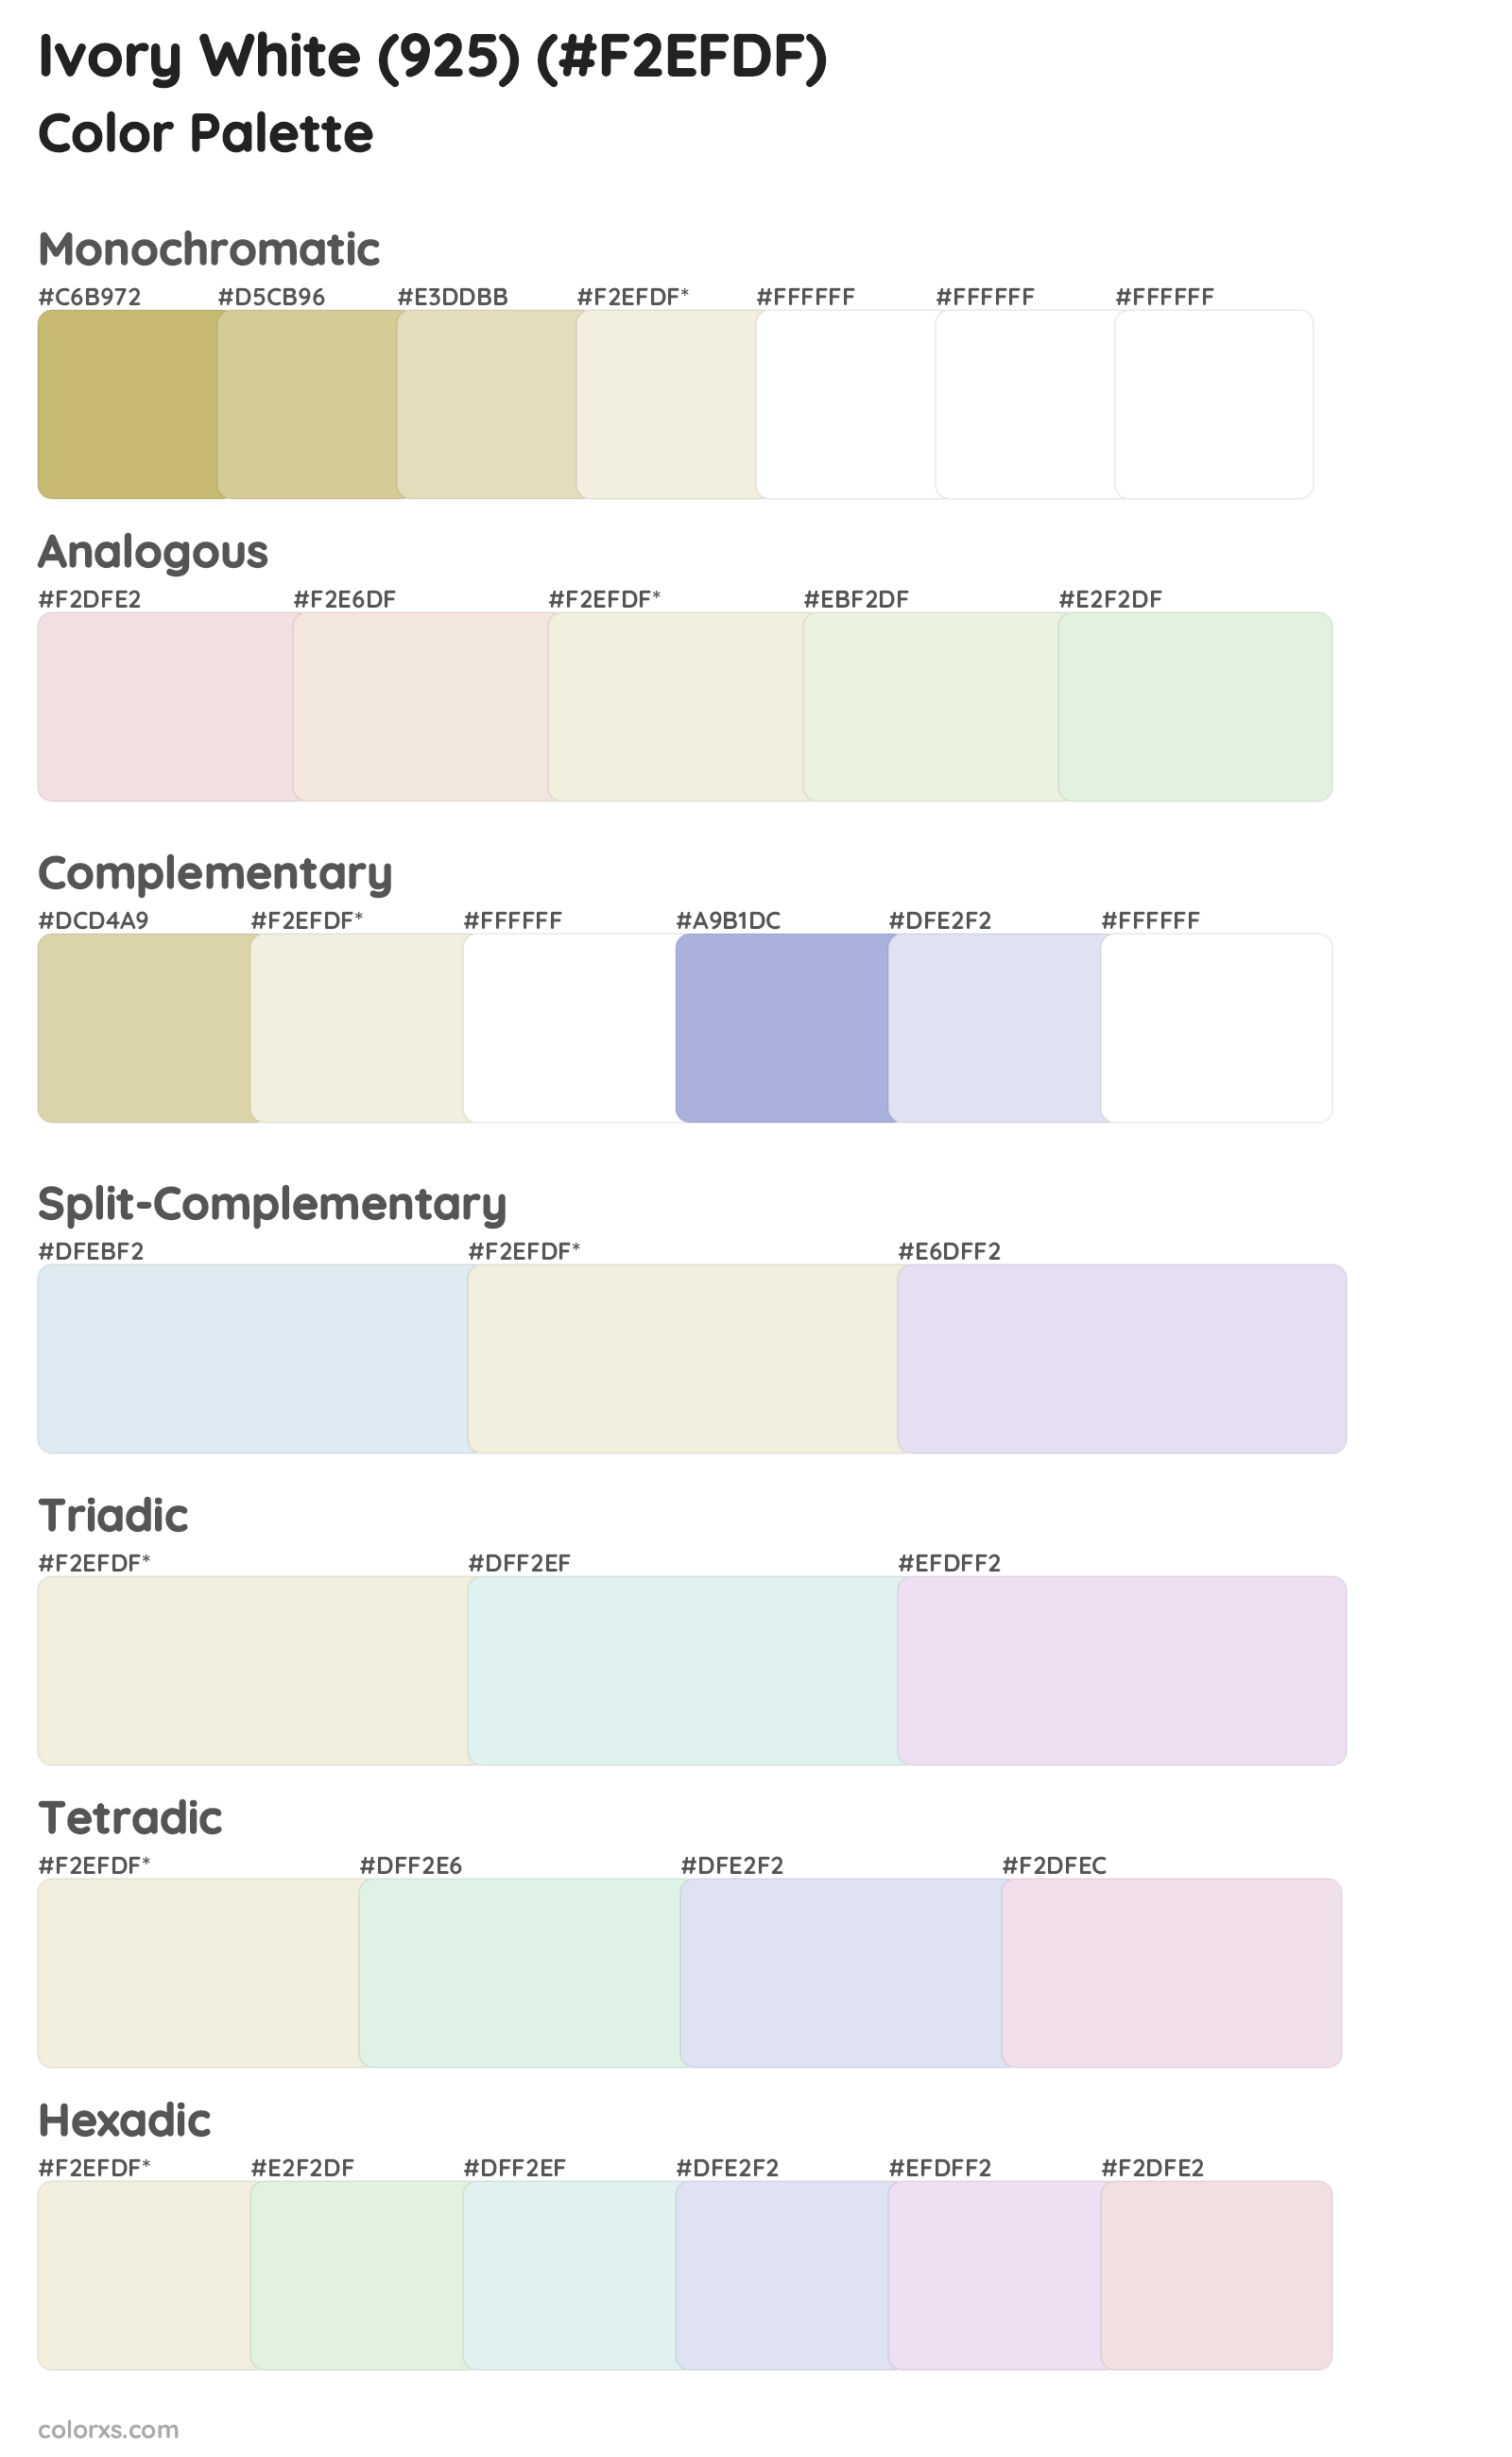 Ivory White (925) Color Scheme Palettes